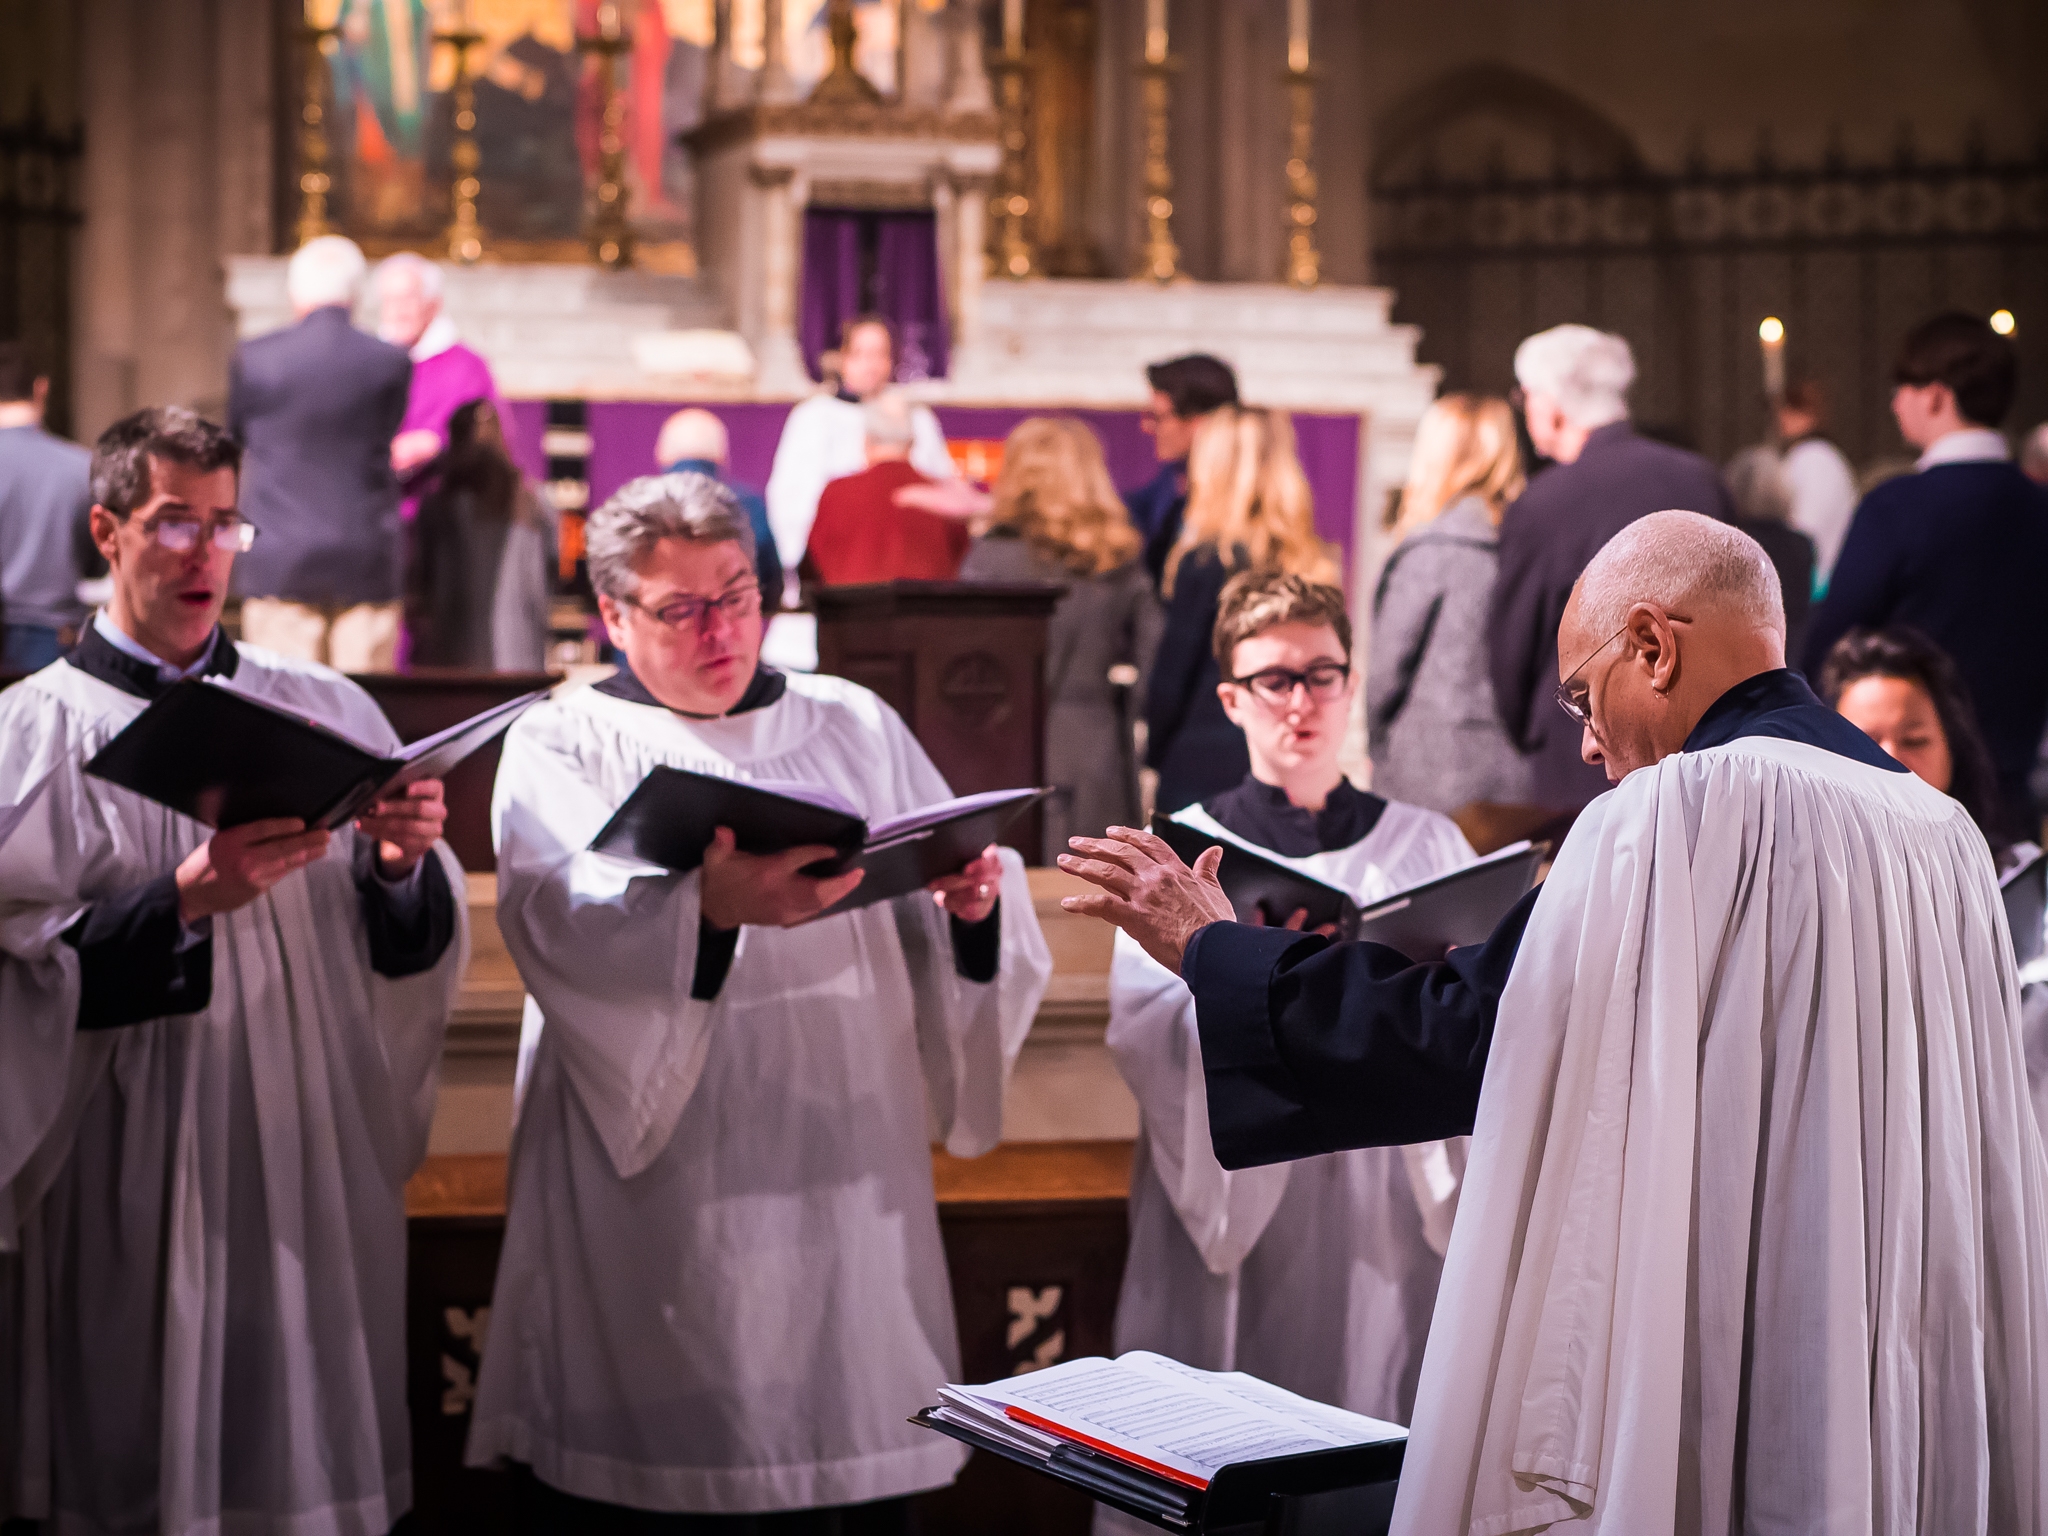   Dr. David Hurd with the Saint Mary’s choir  Photo by Ricardo Gomez 